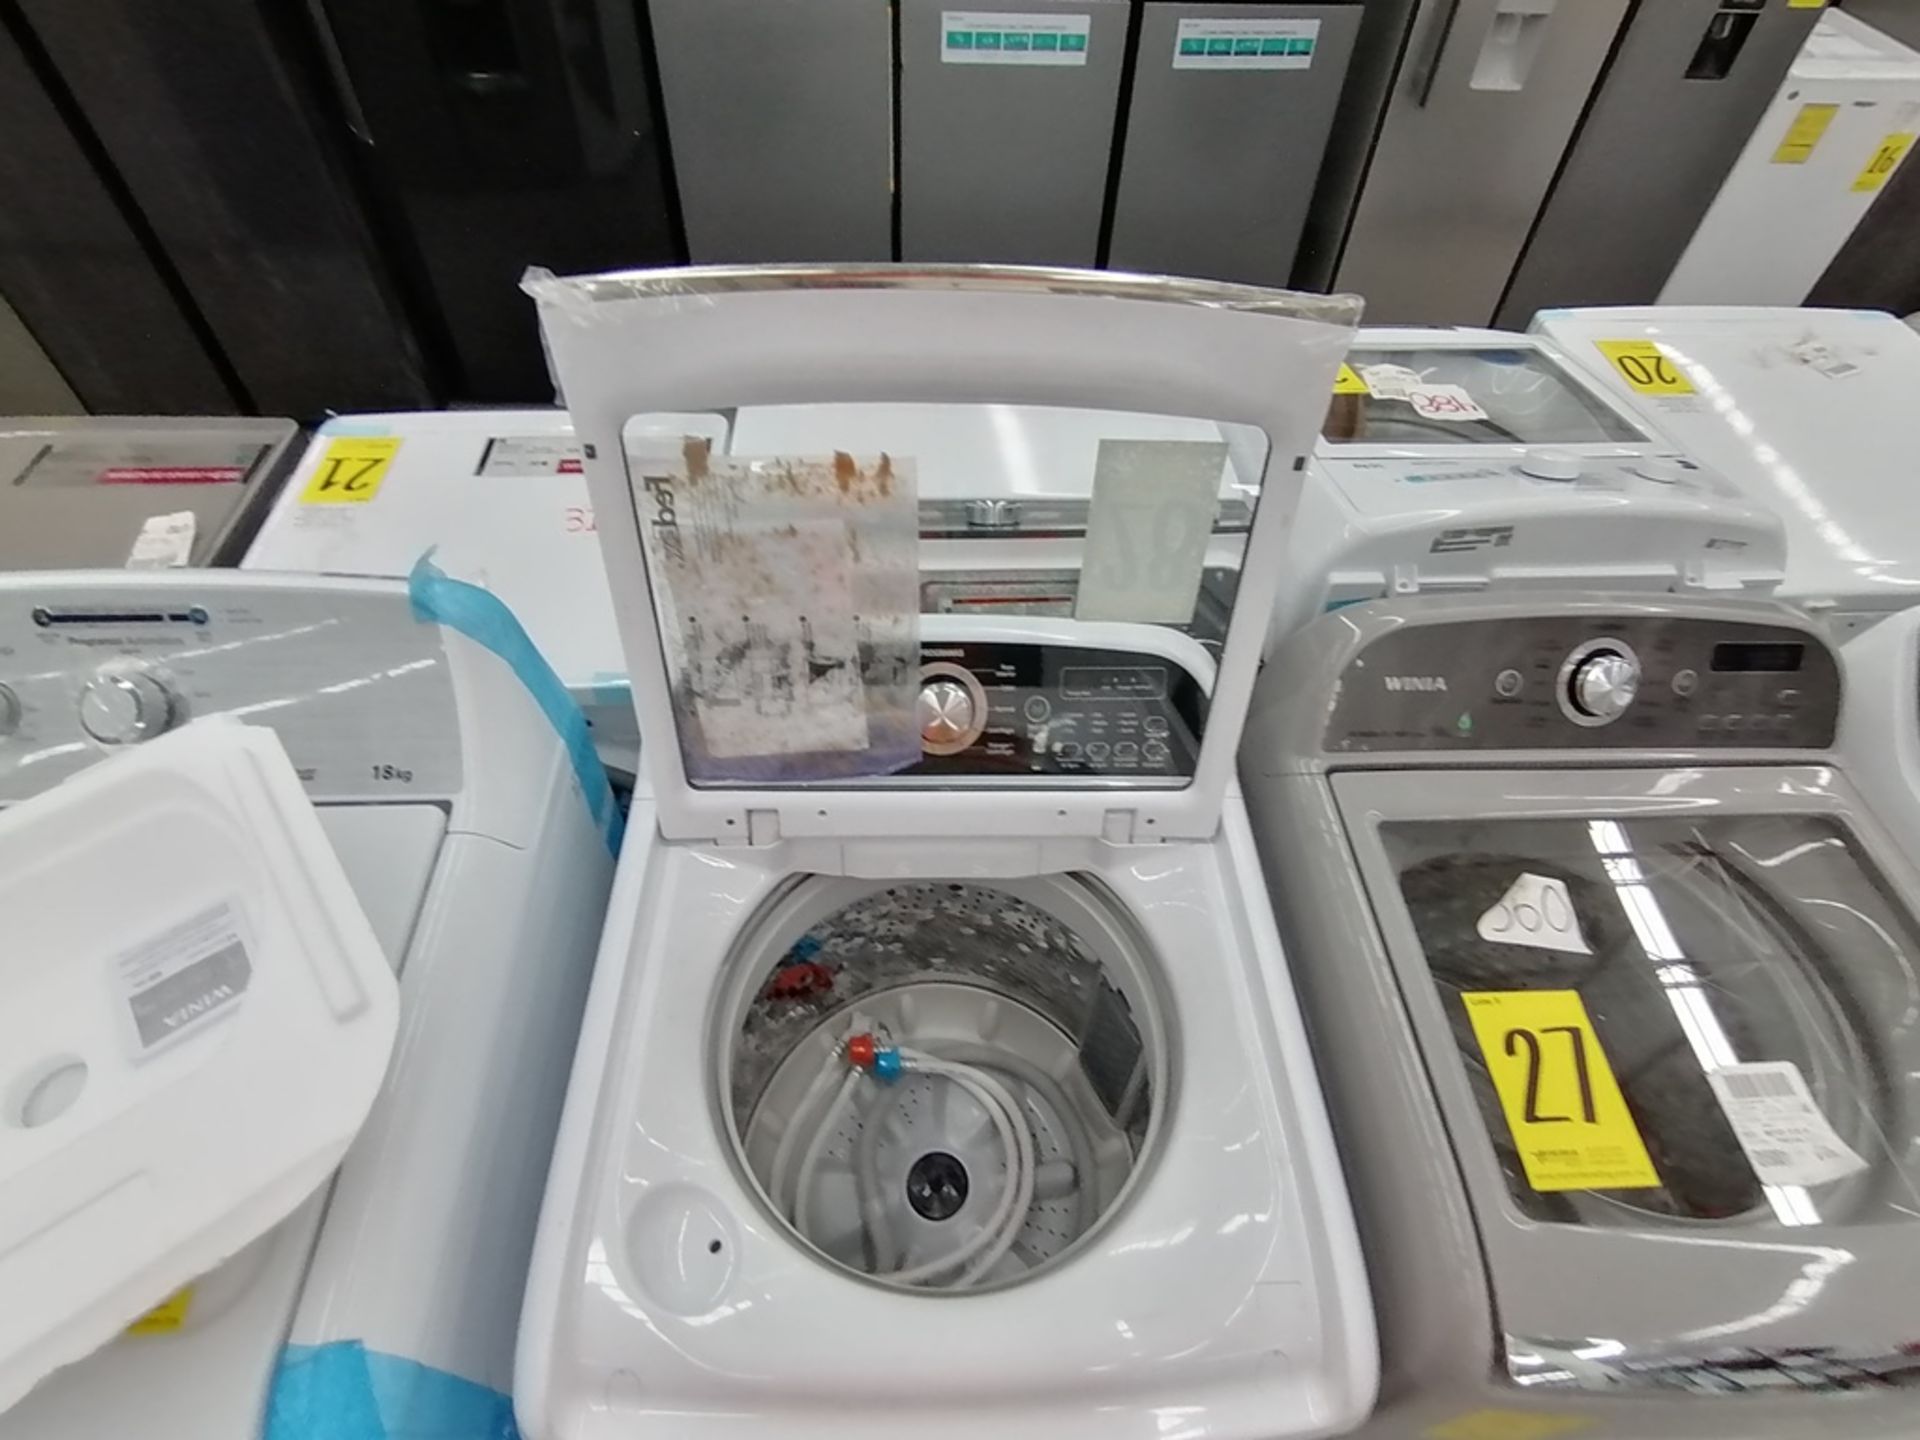 Lote de 3 lavadoras contiene: 1 Lavadora de 16KG, Marca Mabe, Modelo LMA46102VBAB02, Serie 2108S802 - Image 20 of 29